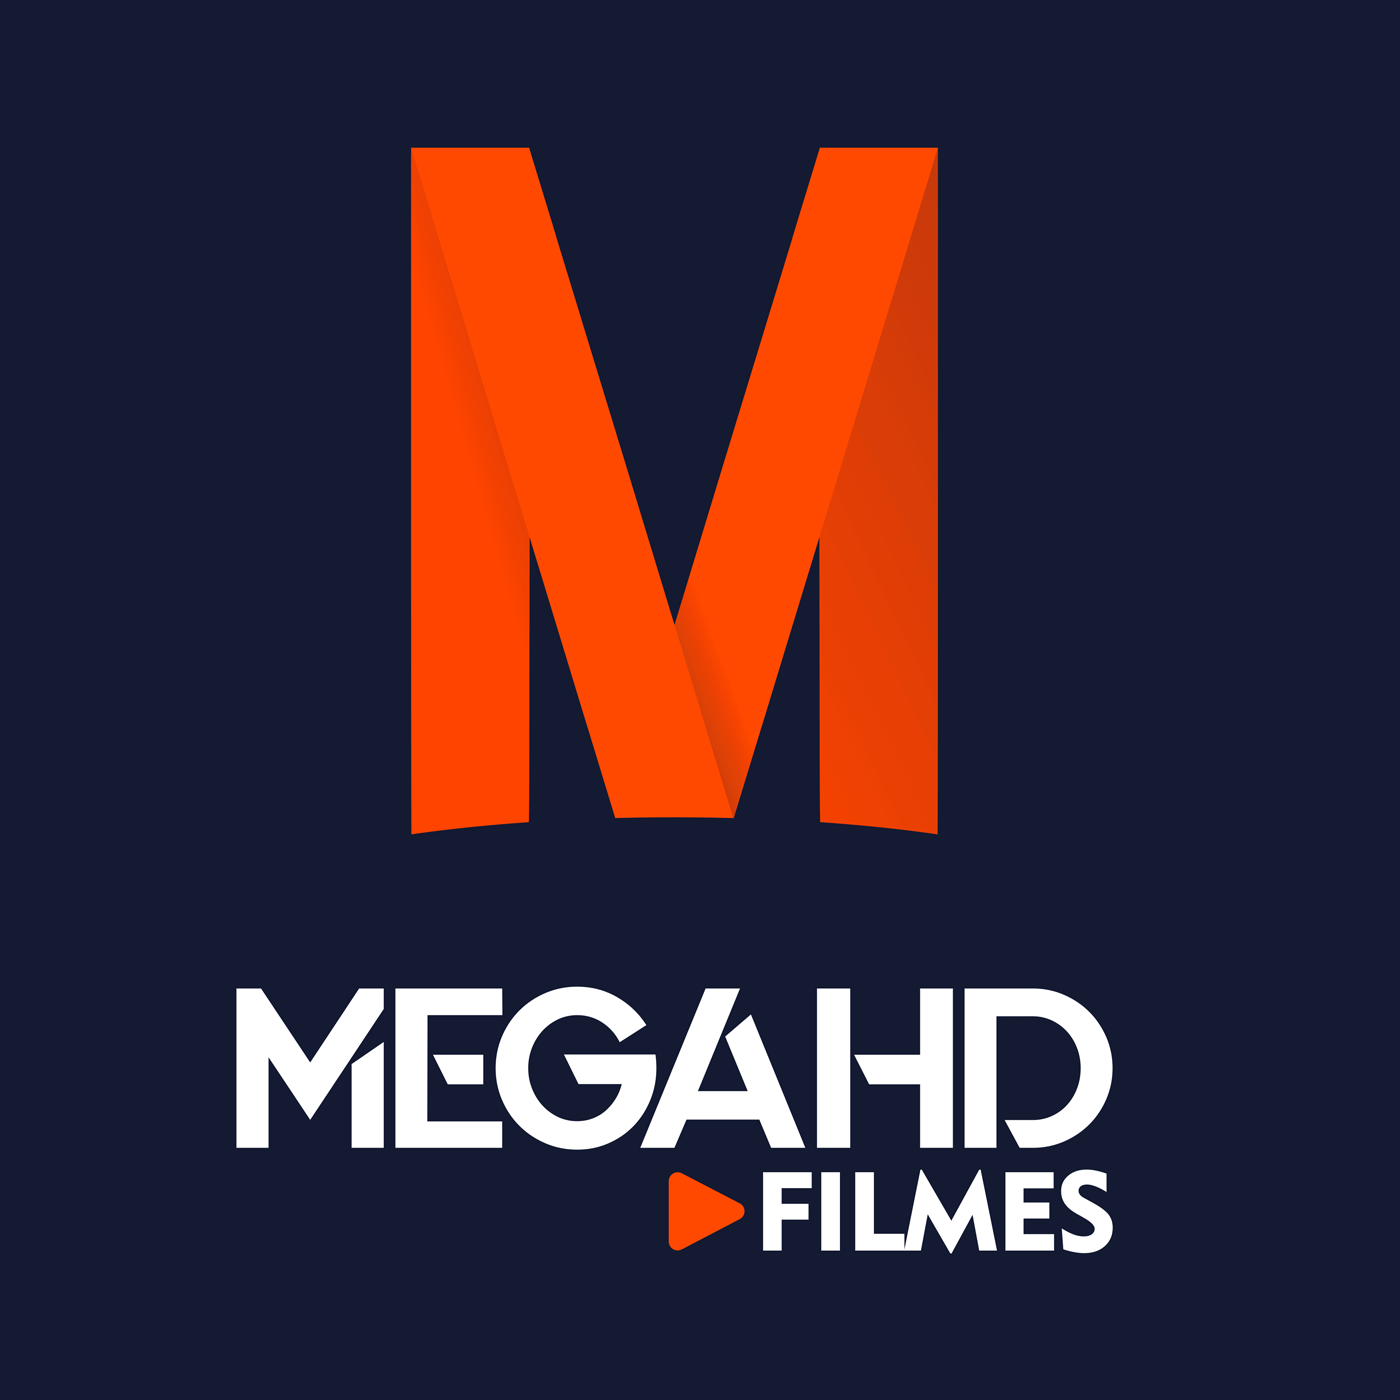 megafilmeshd50.top at WI. Mega Filmes HD – Assistir Filmes e Séries Online  Grátis! - Filmes e